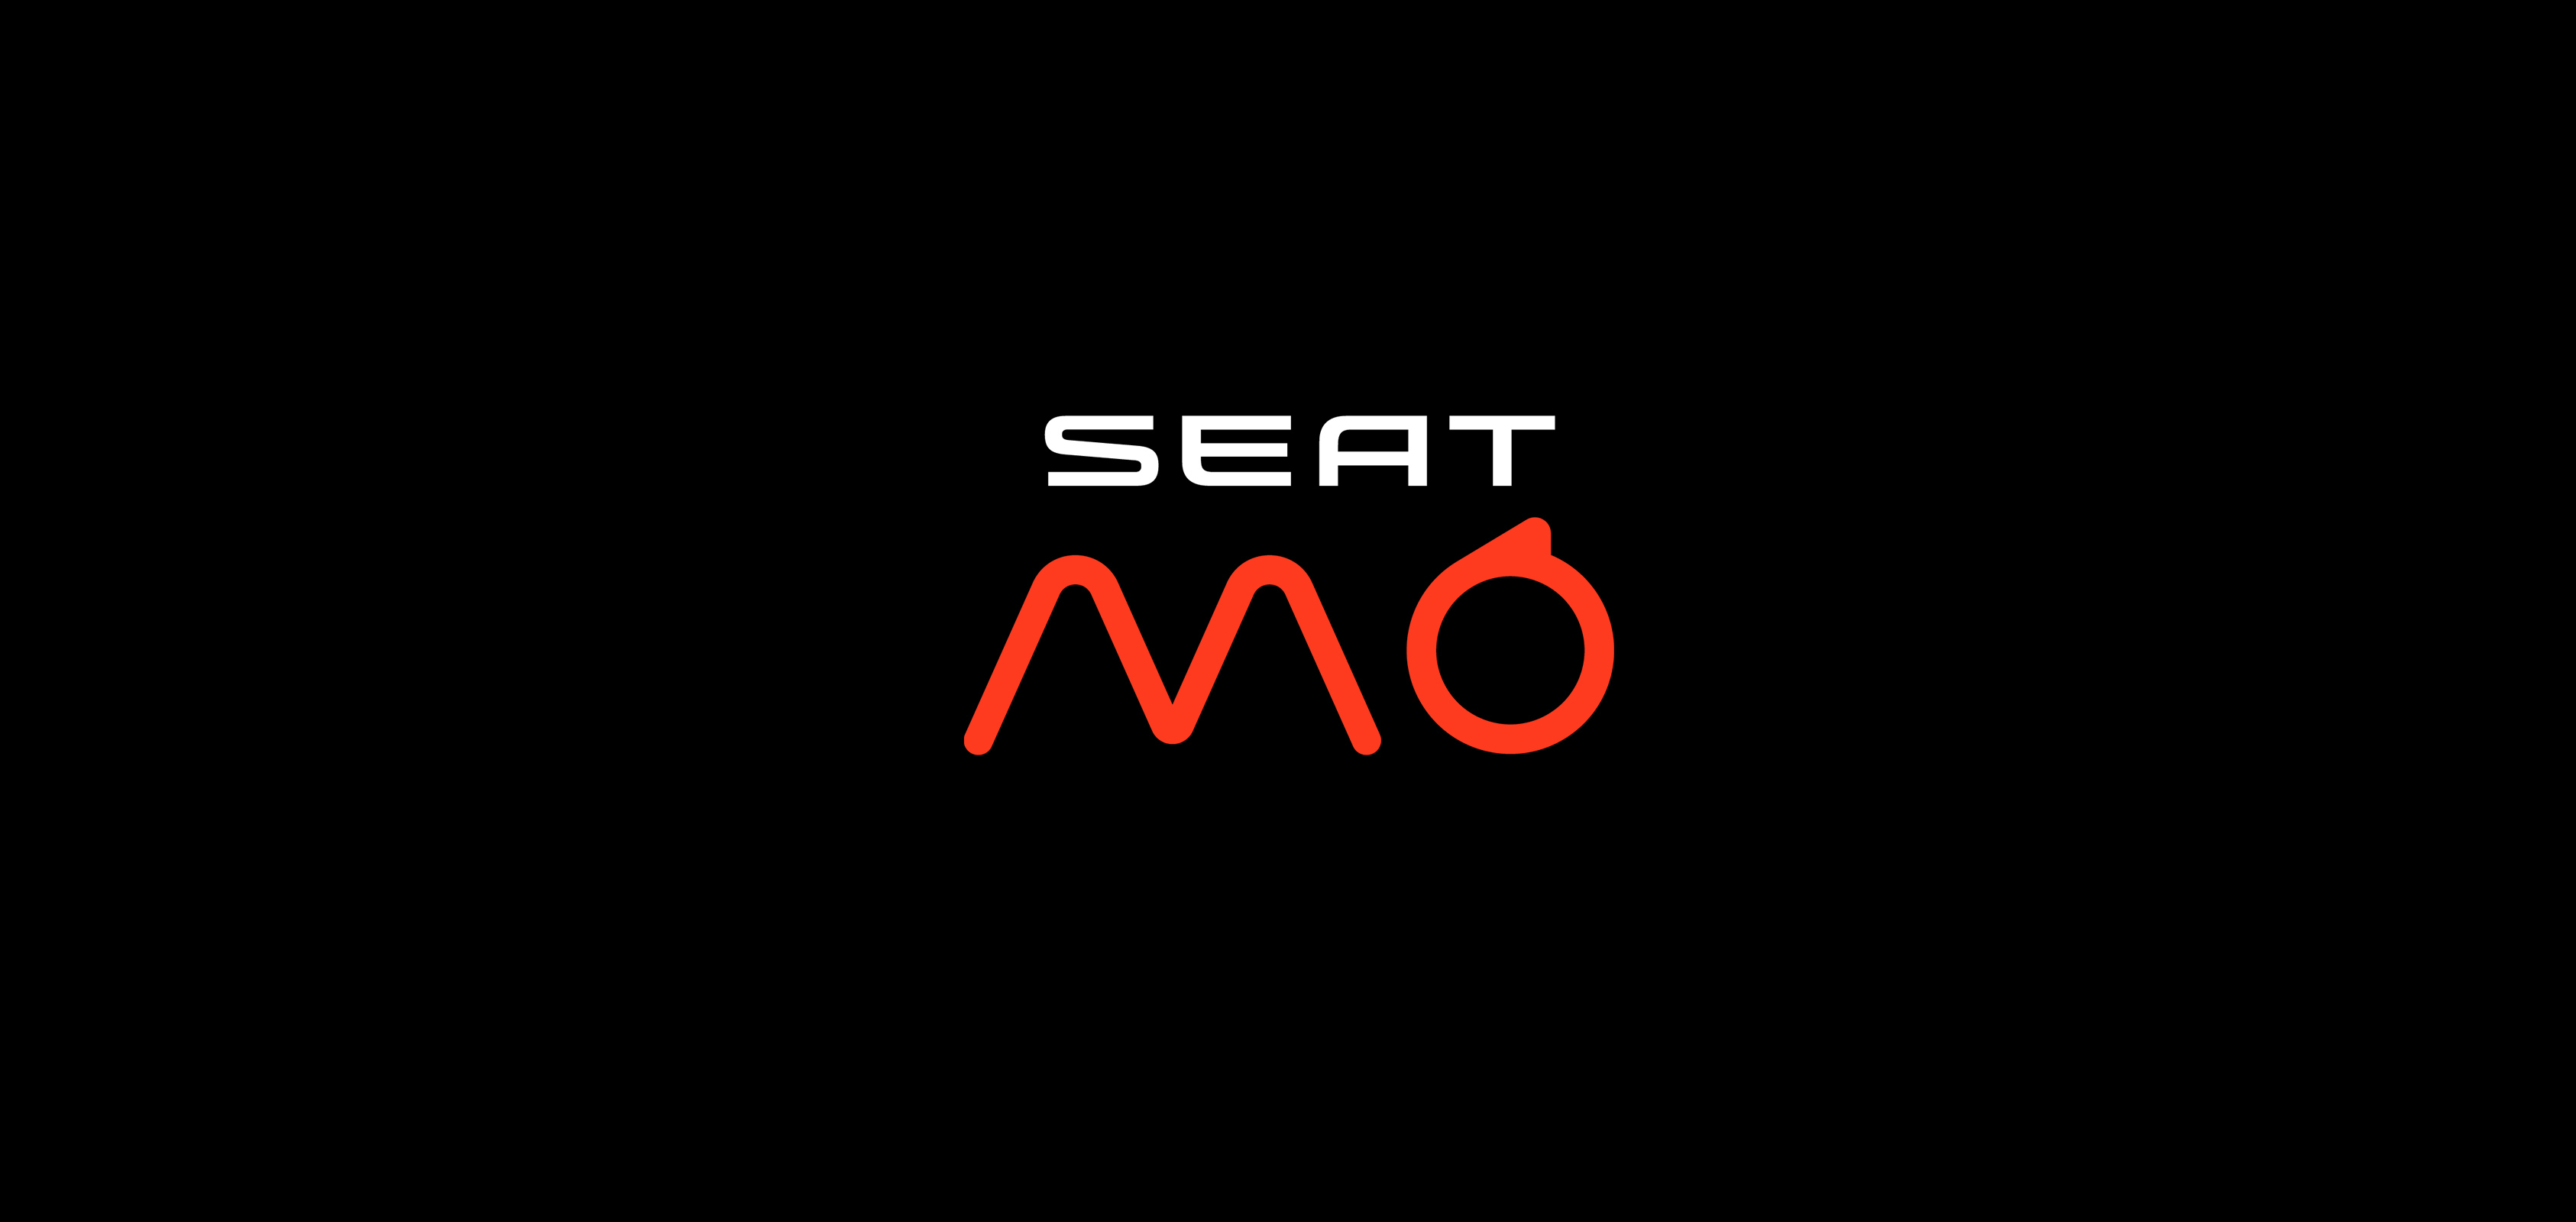 SEAT MÓ logo